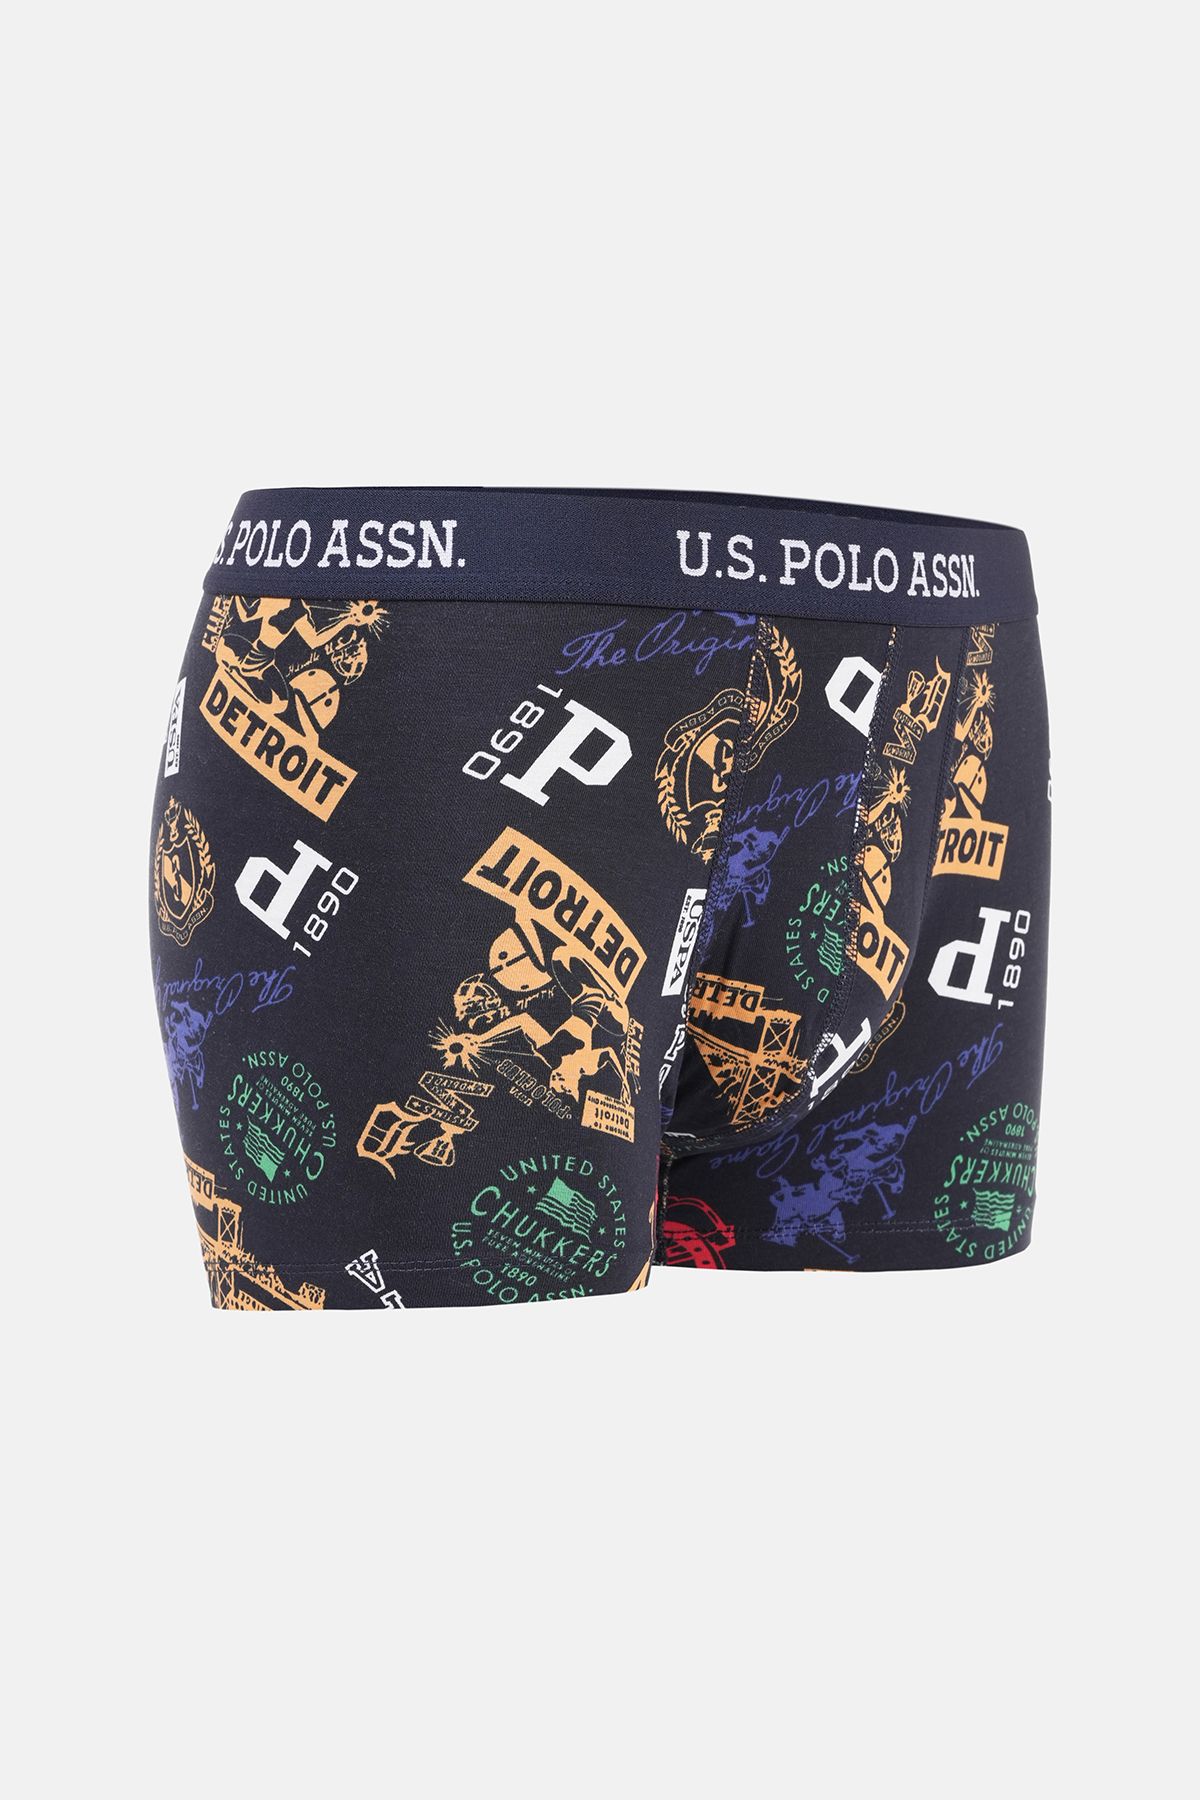 U.S. Polo Assn. Base. Polo Assn Men's 2-Piece Plain Color-Printed